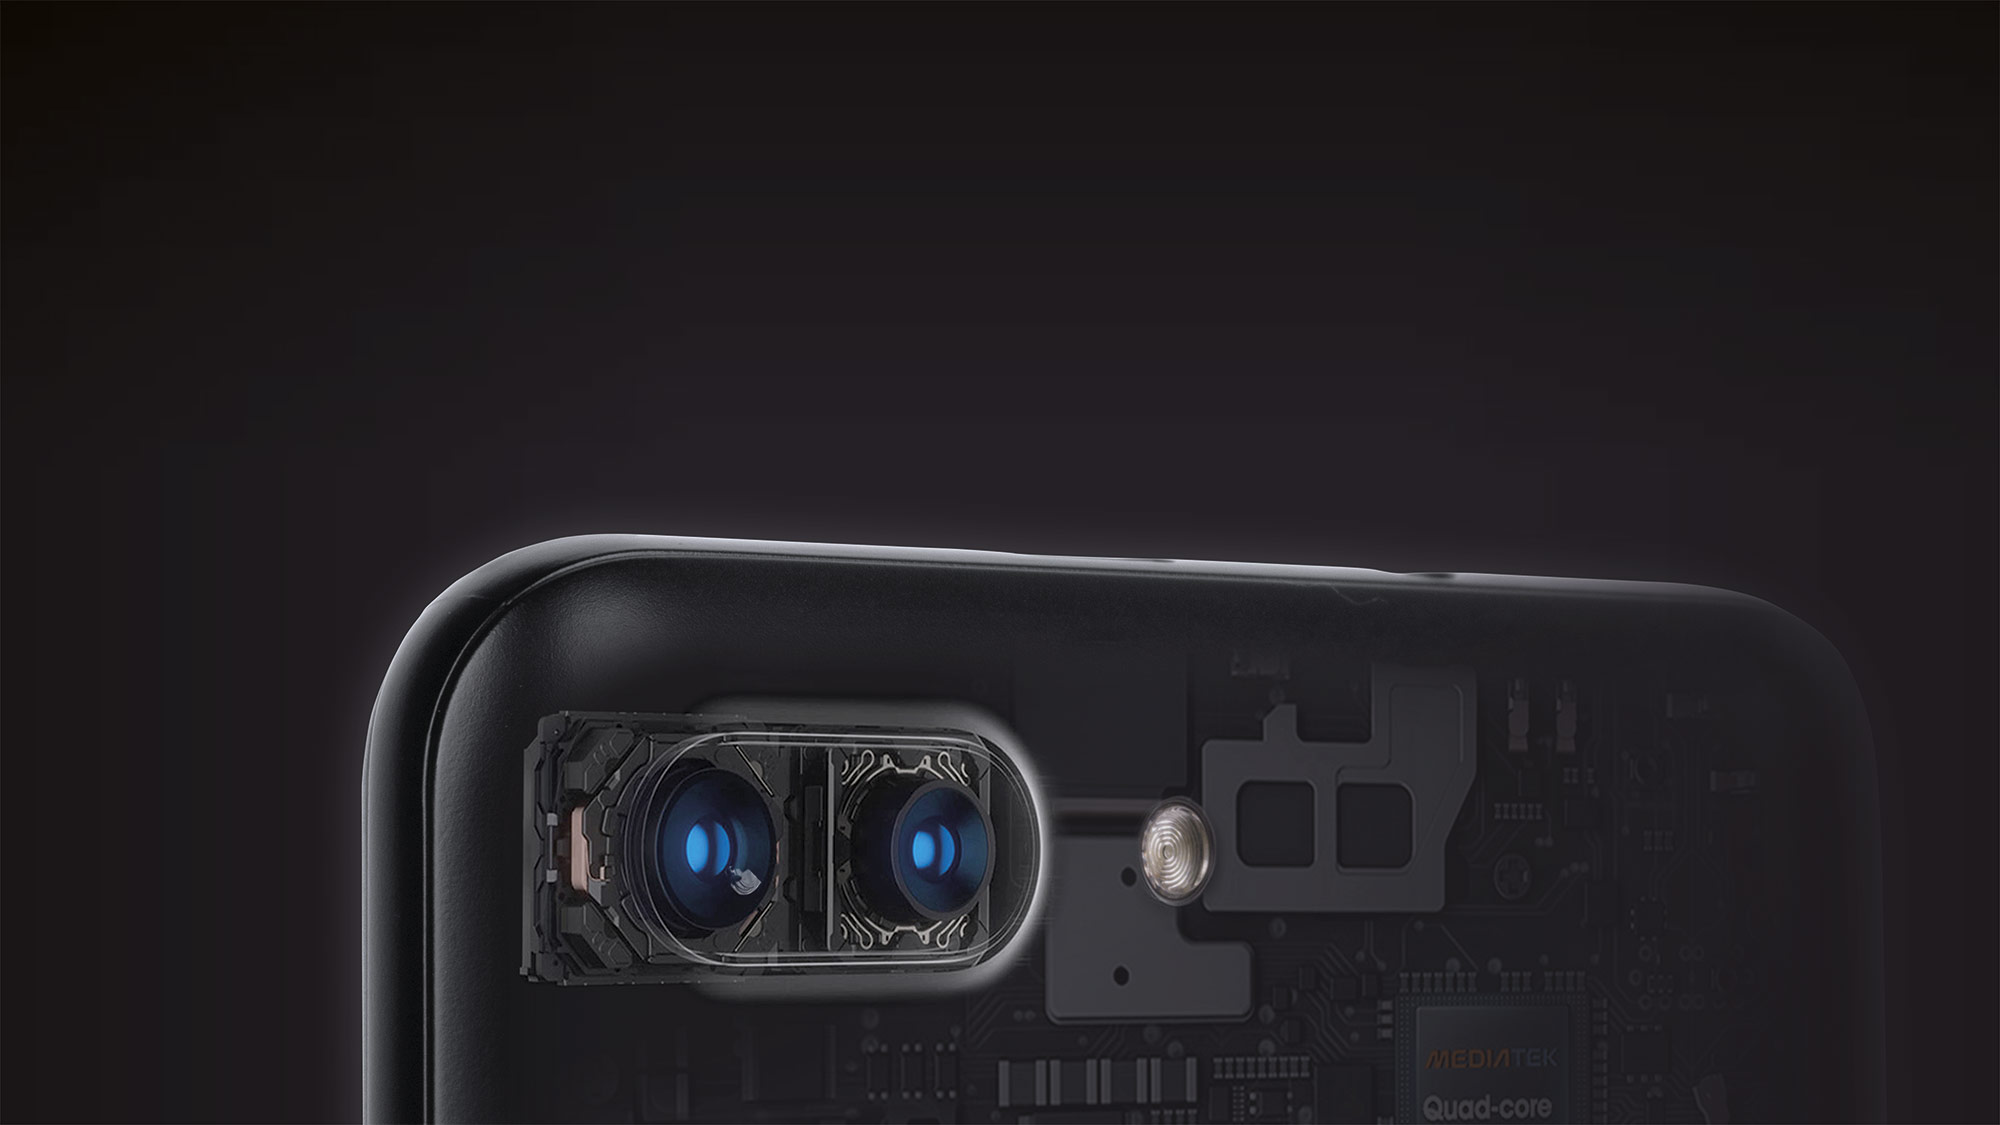 Oprócz kamery 13 Mpx i diody doświetlającej, tył smartfona Kruger&Matz FLOW 6 kryje dodatkową kamerę 0,3 Mpx, dzięki której uzyskasz doskonałe efekty rozmywania tła. Wykorzystaj możliwości swojego telefonu i uwieczniaj wszystkie wyjątkowe momenty w naprawdę wysokiej jakości. 